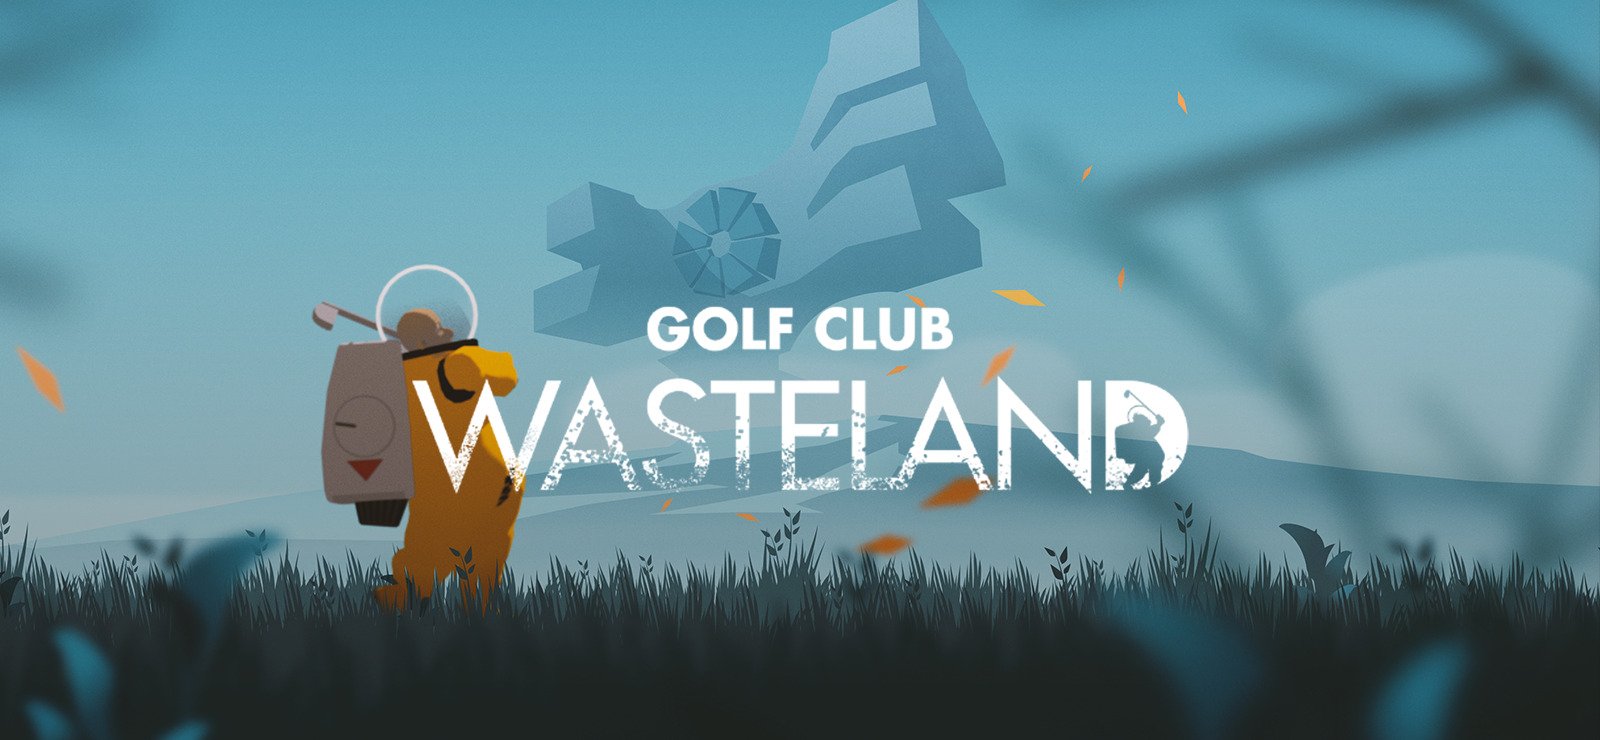 Golf Club Wasteland 12